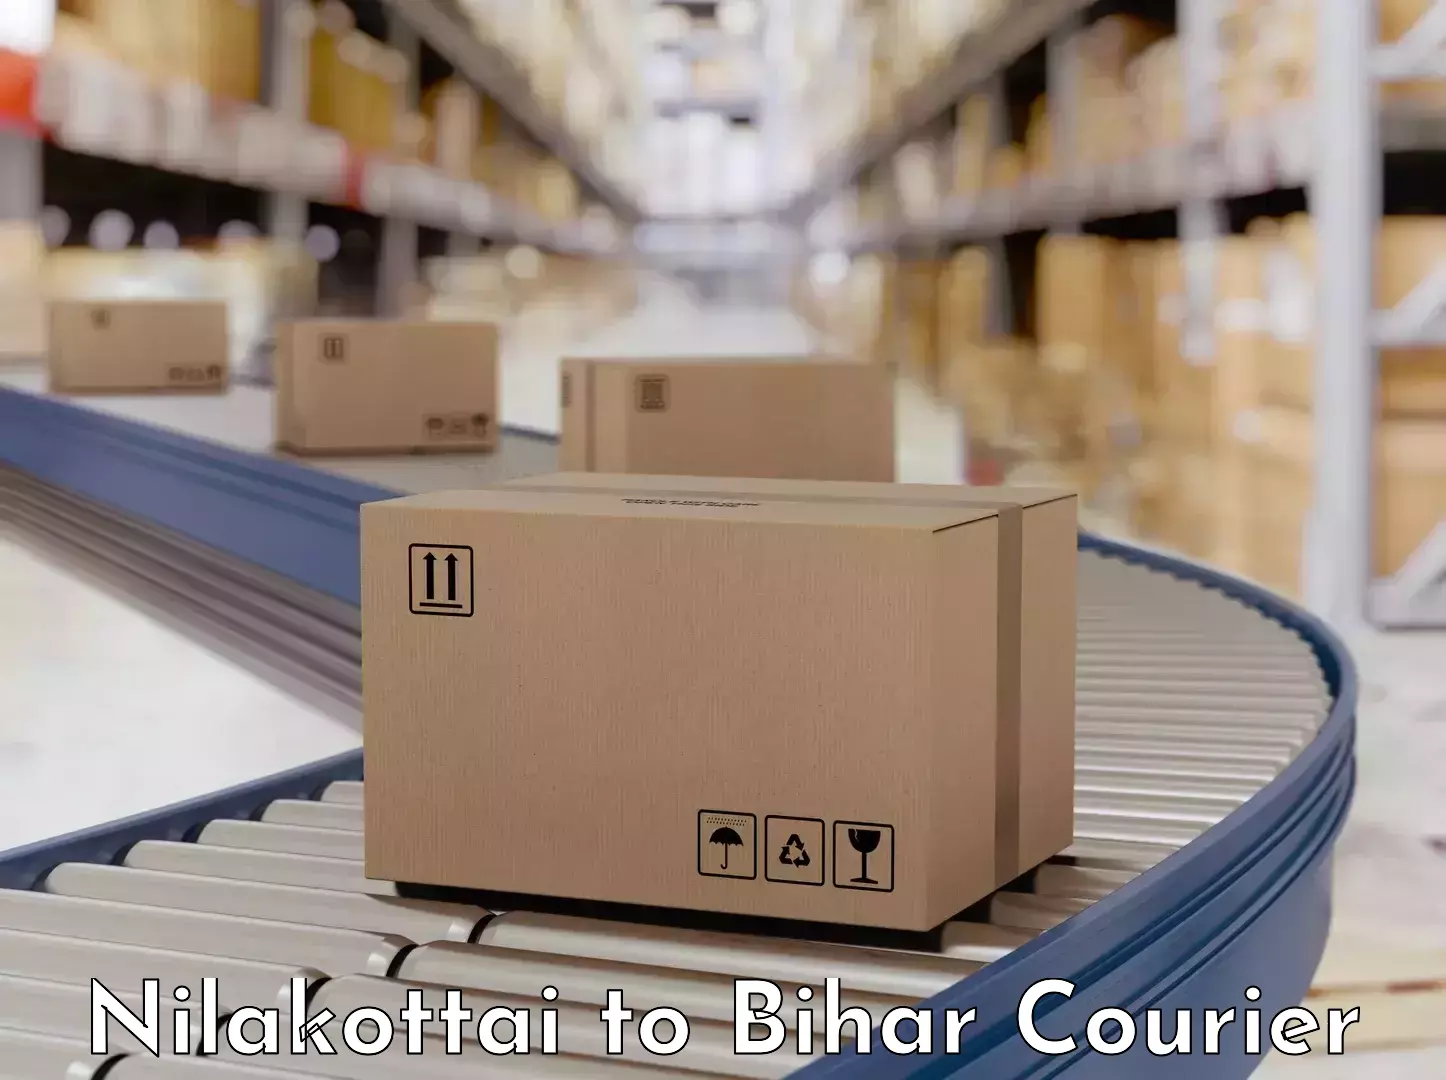 Professional packing services Nilakottai to Bakhri